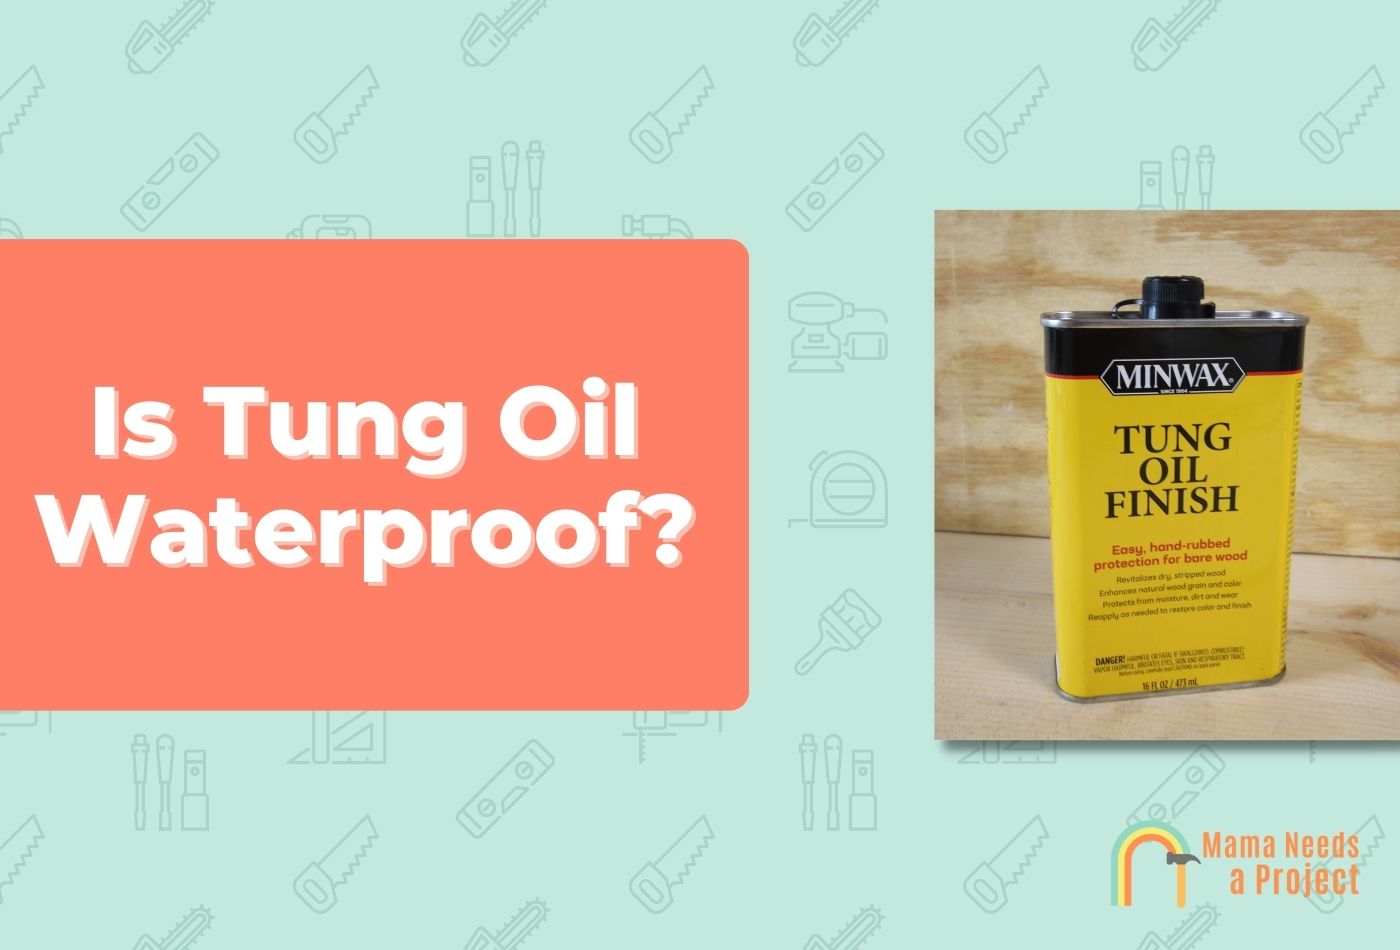 Is Tung Oil Waterproof?